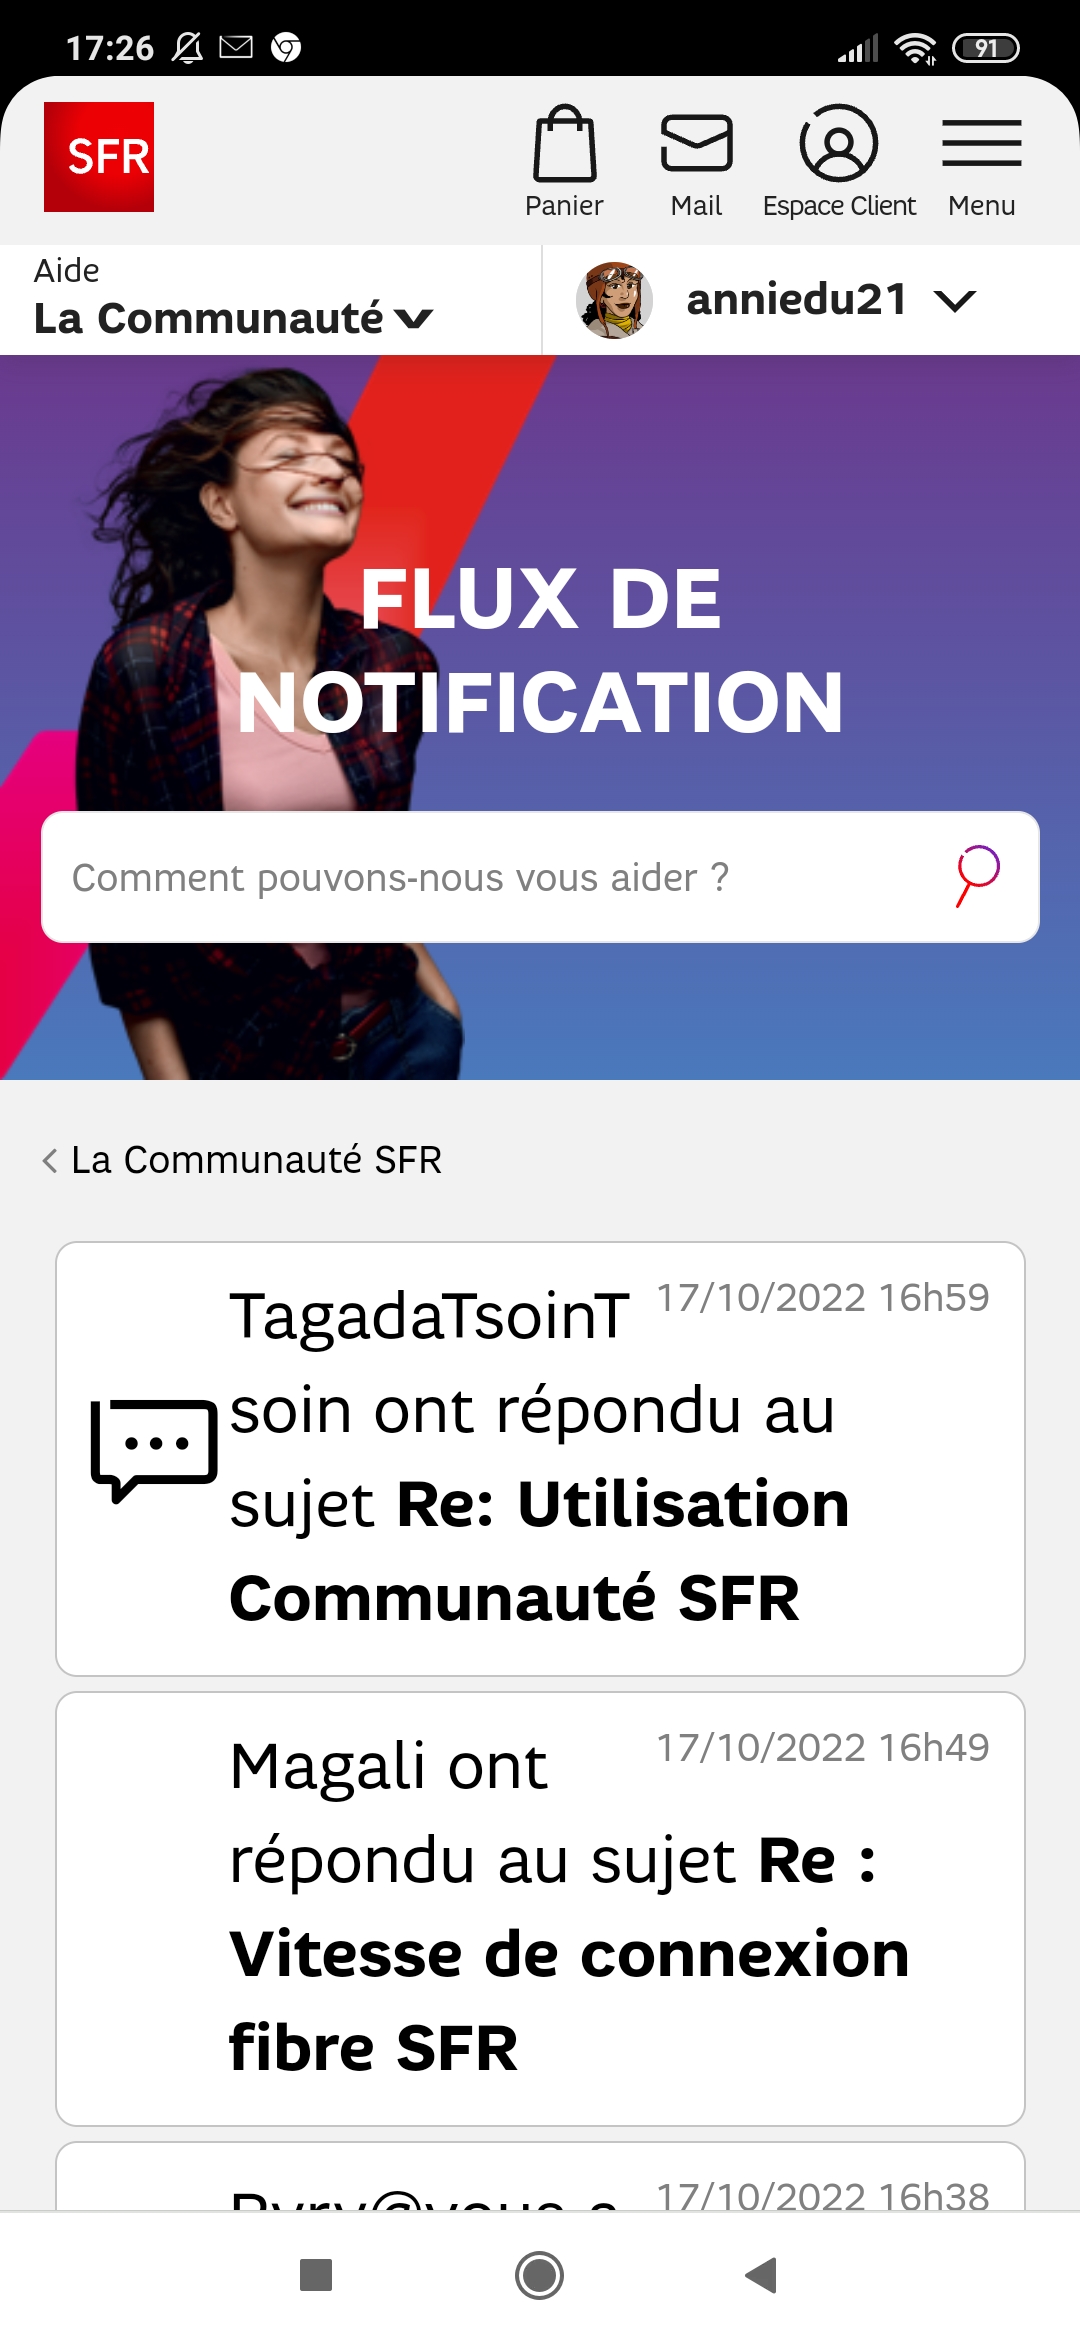 La Communauté SFR